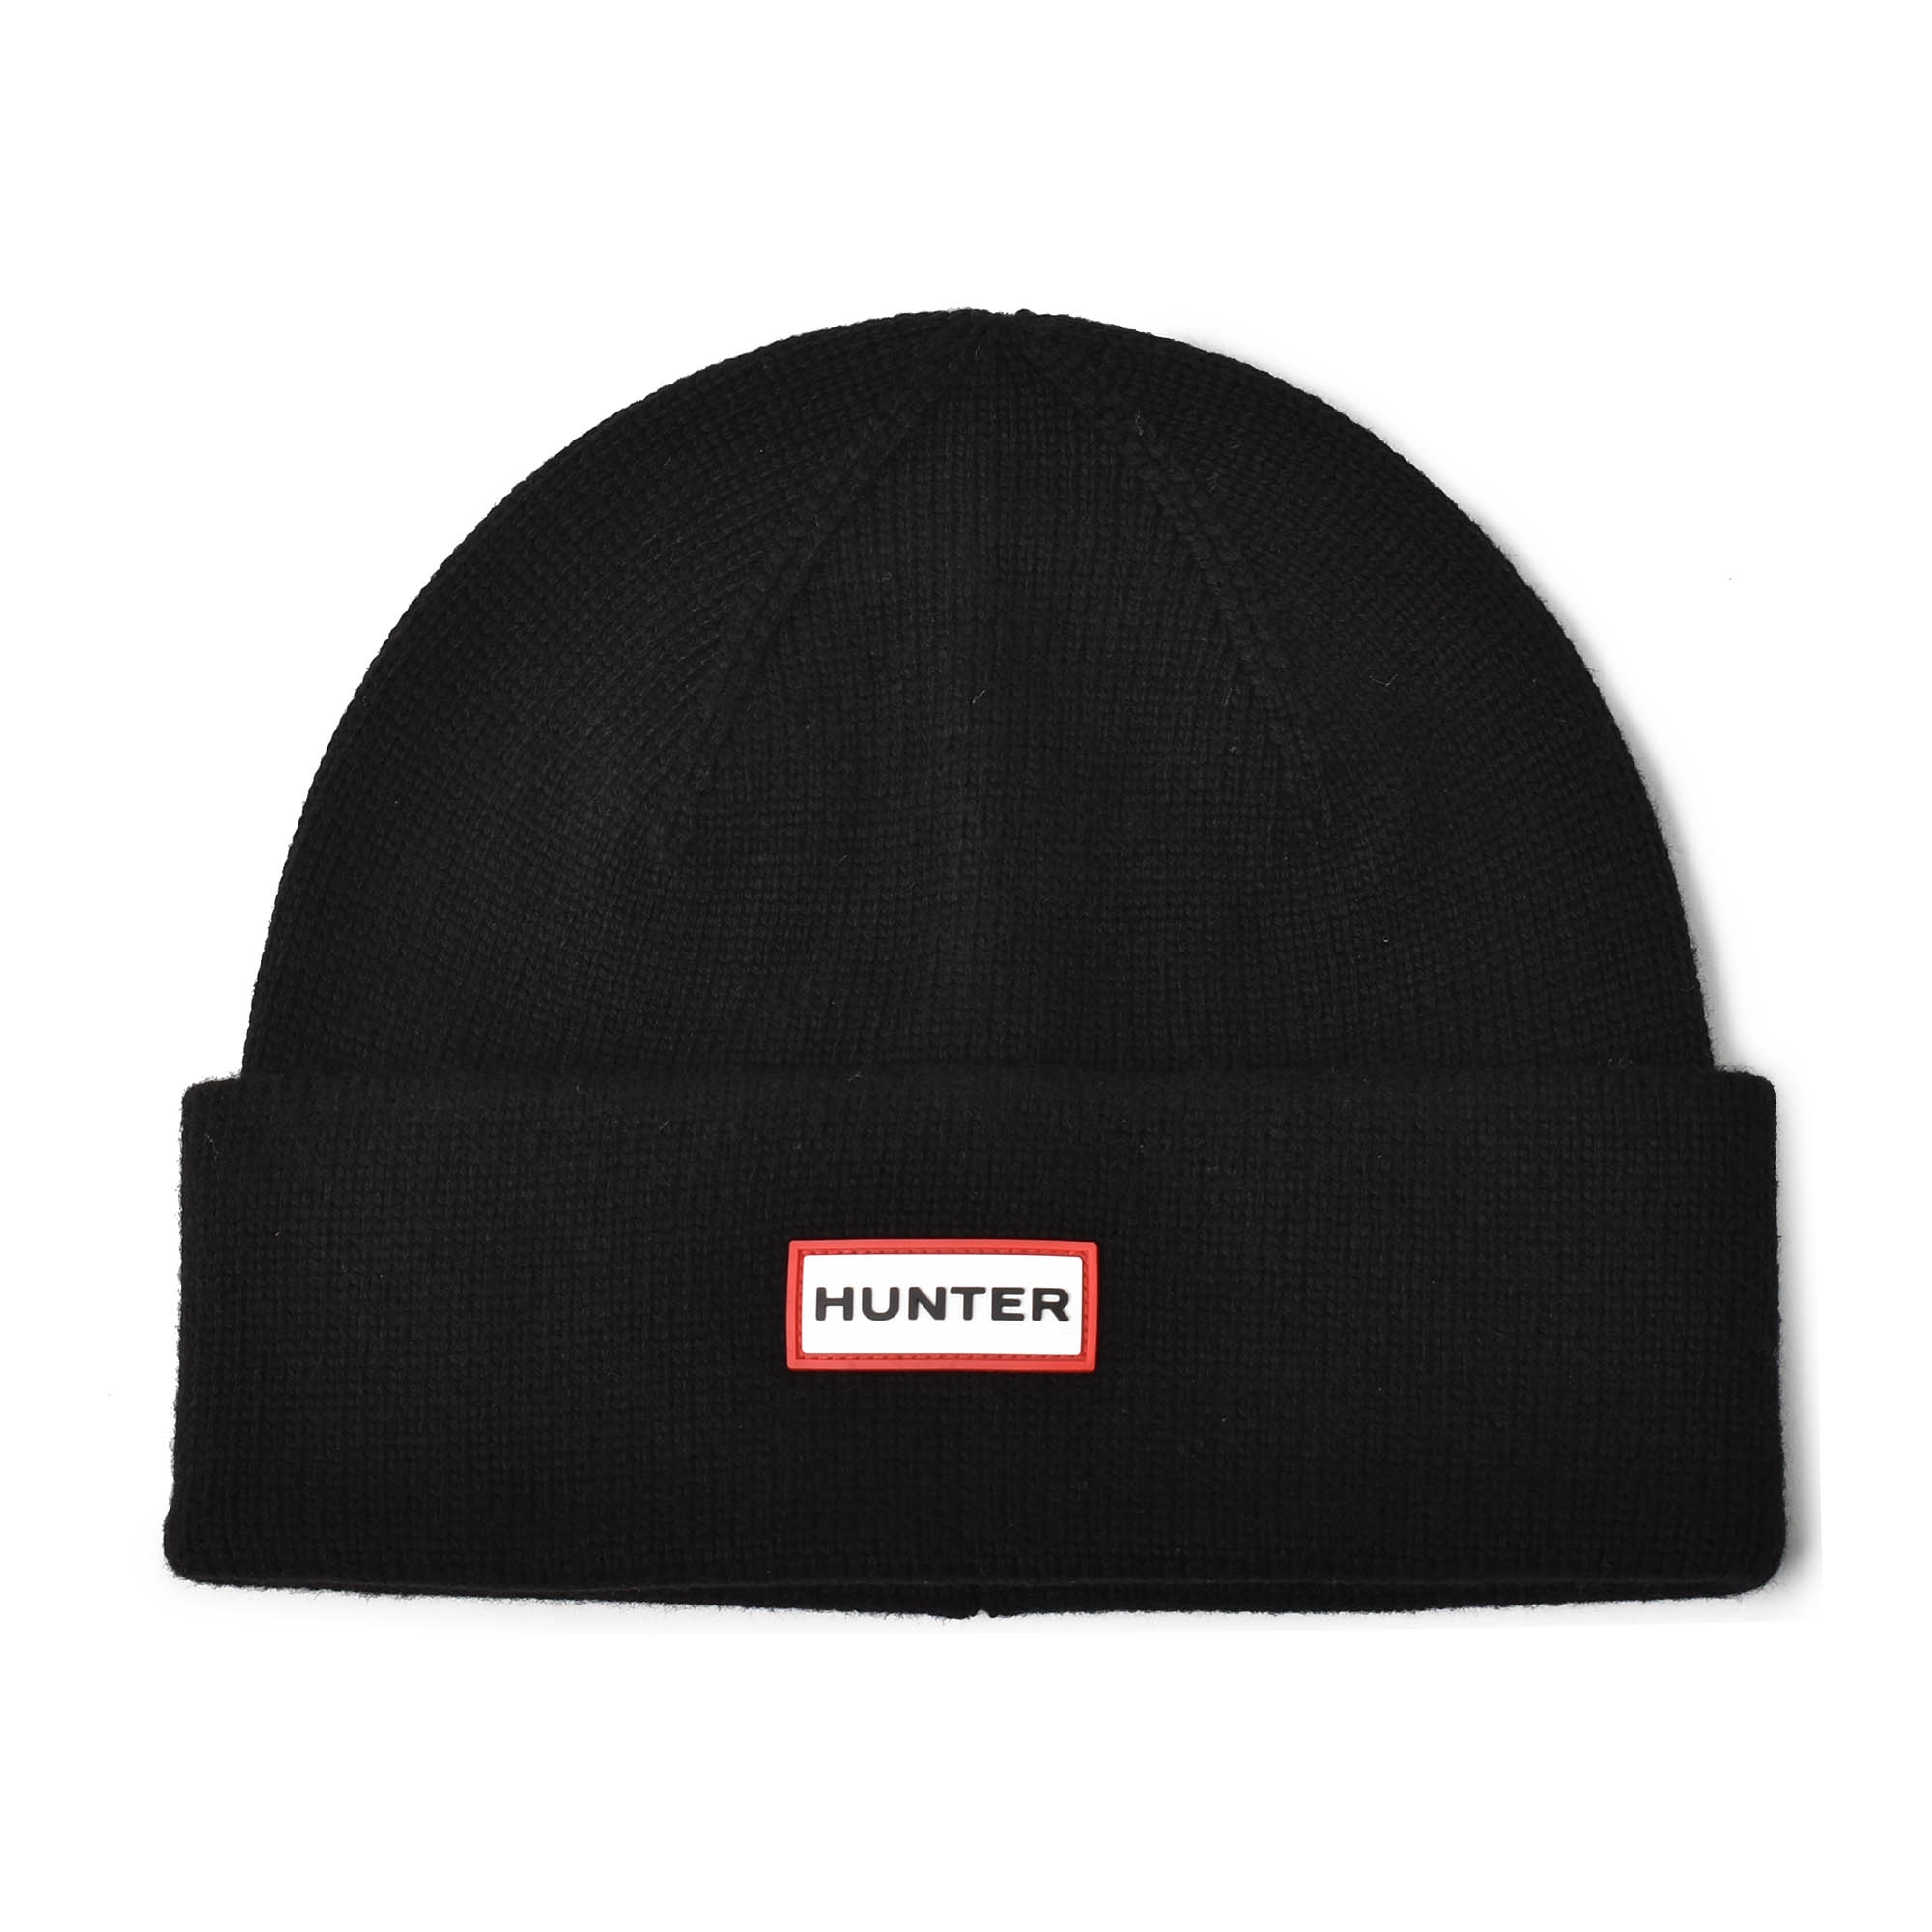 ほぼ新品・HUNTER ハンターレインバケットハット帽子 最安値級価格 - 帽子